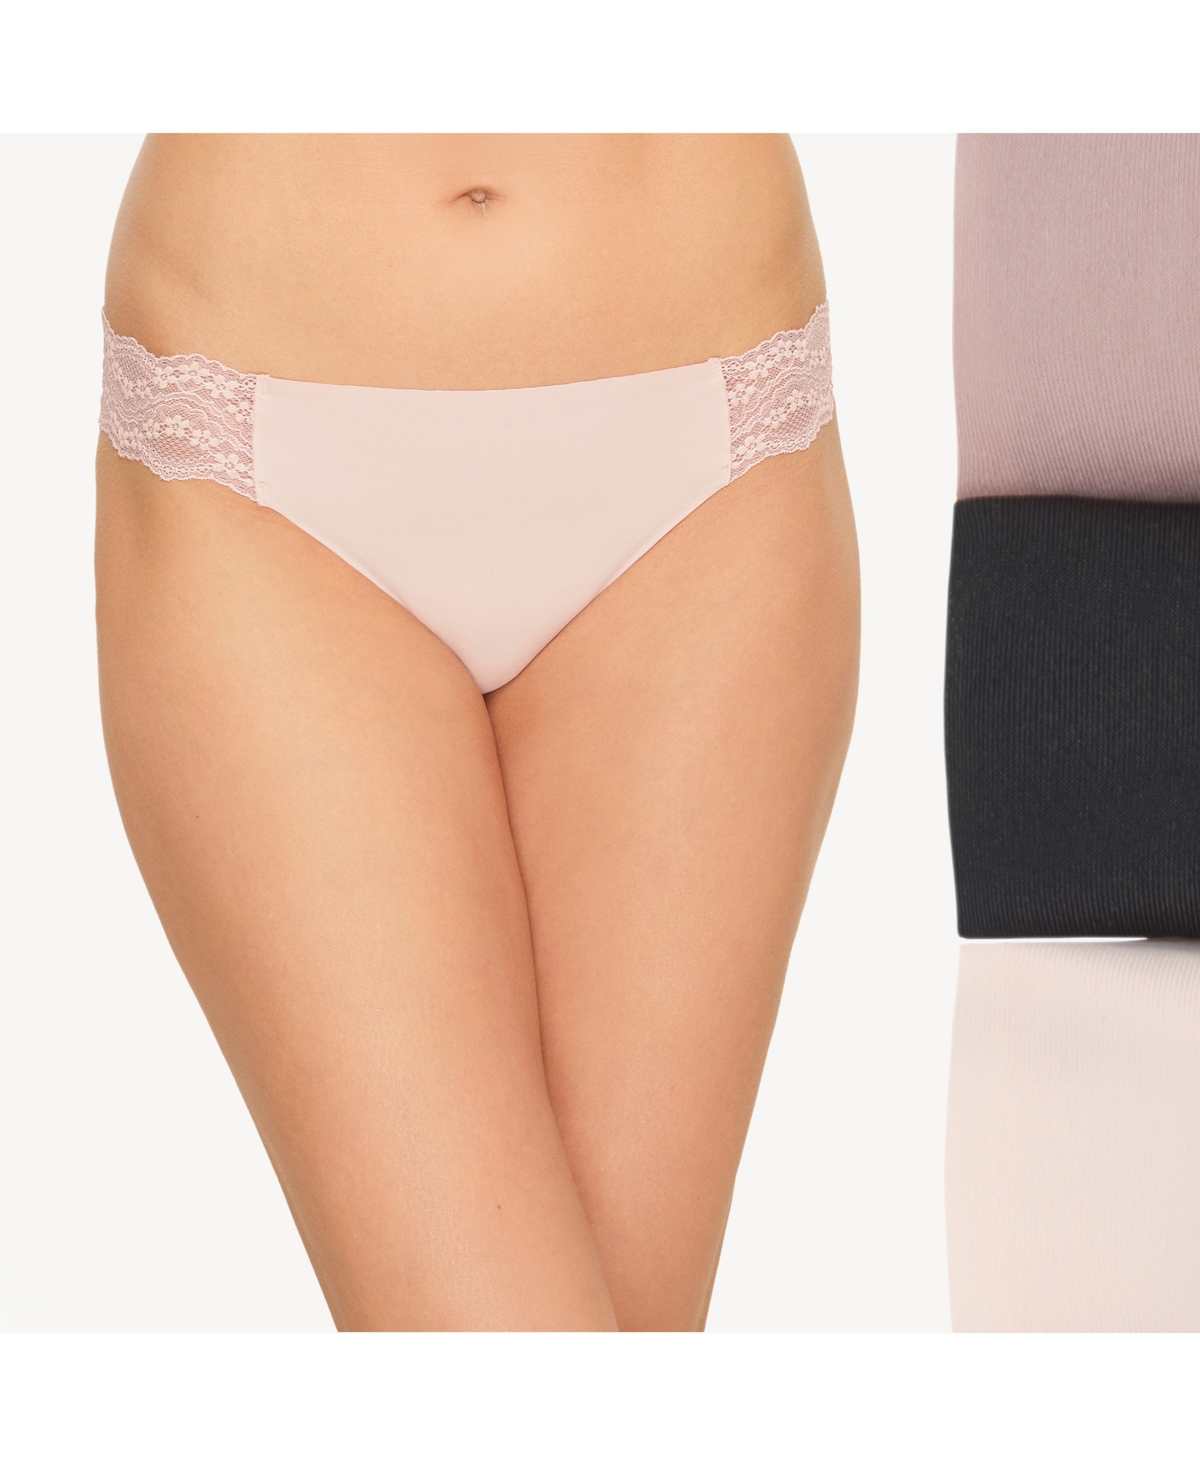 Women's B.Bare 3 Pack Thong Underwear 970367 - Night, Antler, Rose Smoke